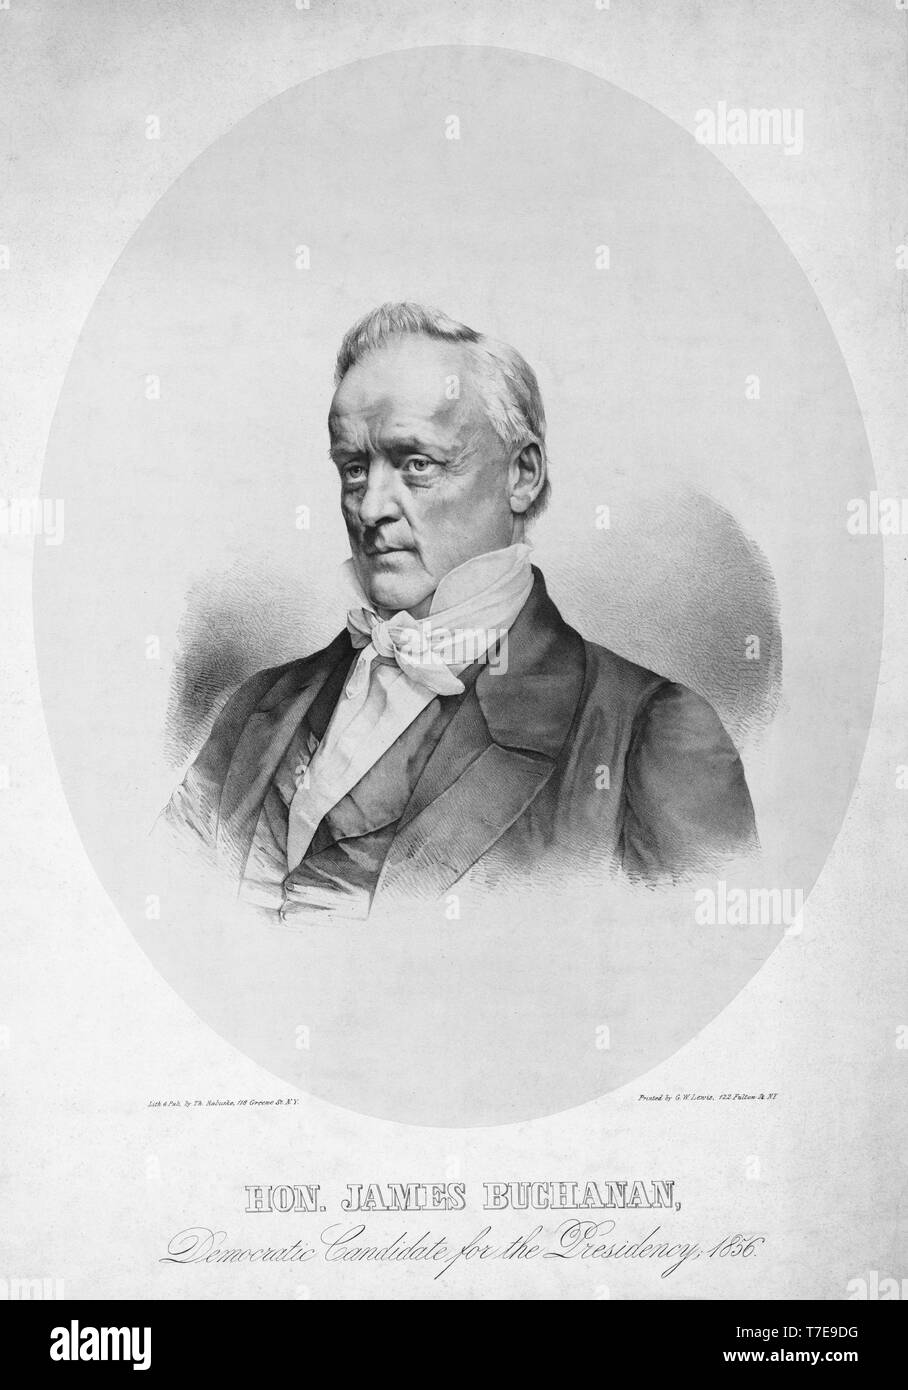 Hon. James Buchanan, der demokratische Kandidat für die Präsidentschaft, Lithographie & von Thomas Rabuske, N.Y., 1856 veröffentlicht. Stockfoto